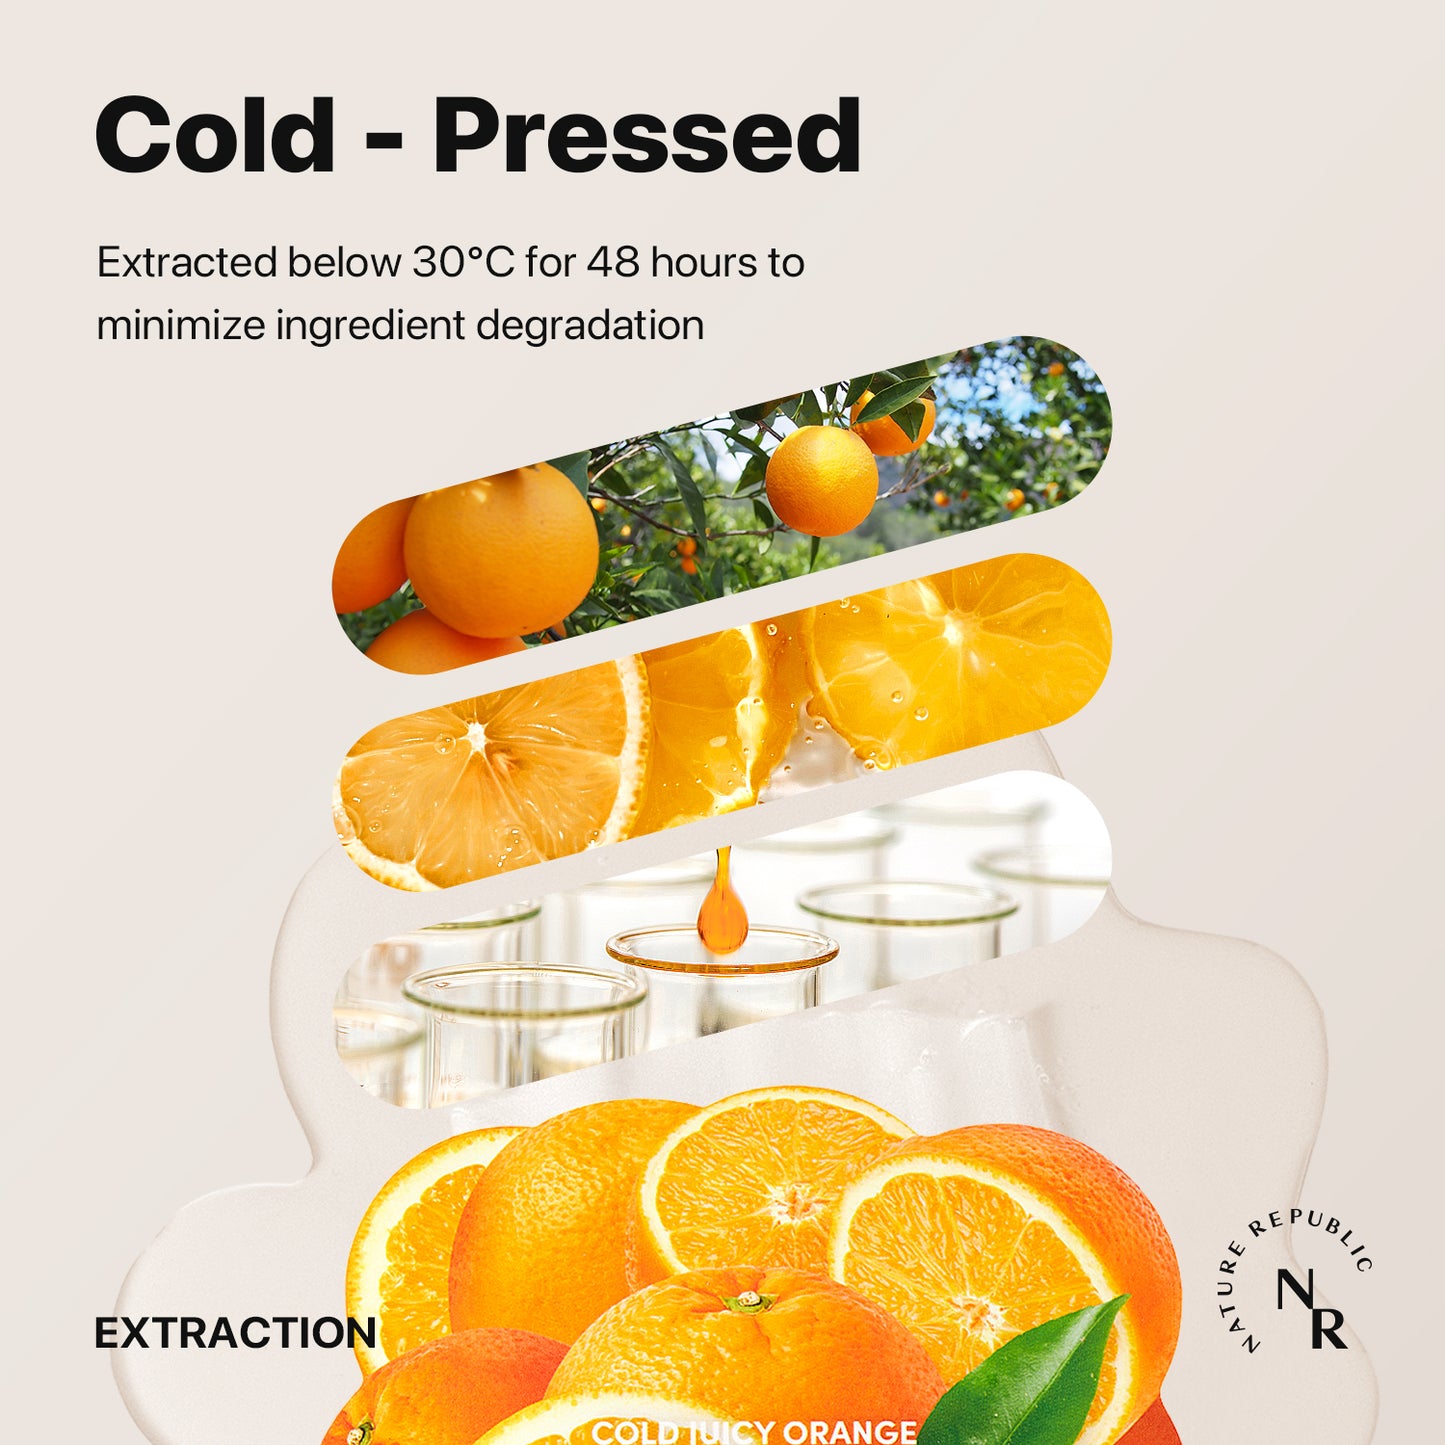 COLD JUICY Orange Energizing Fresh Gel Mask